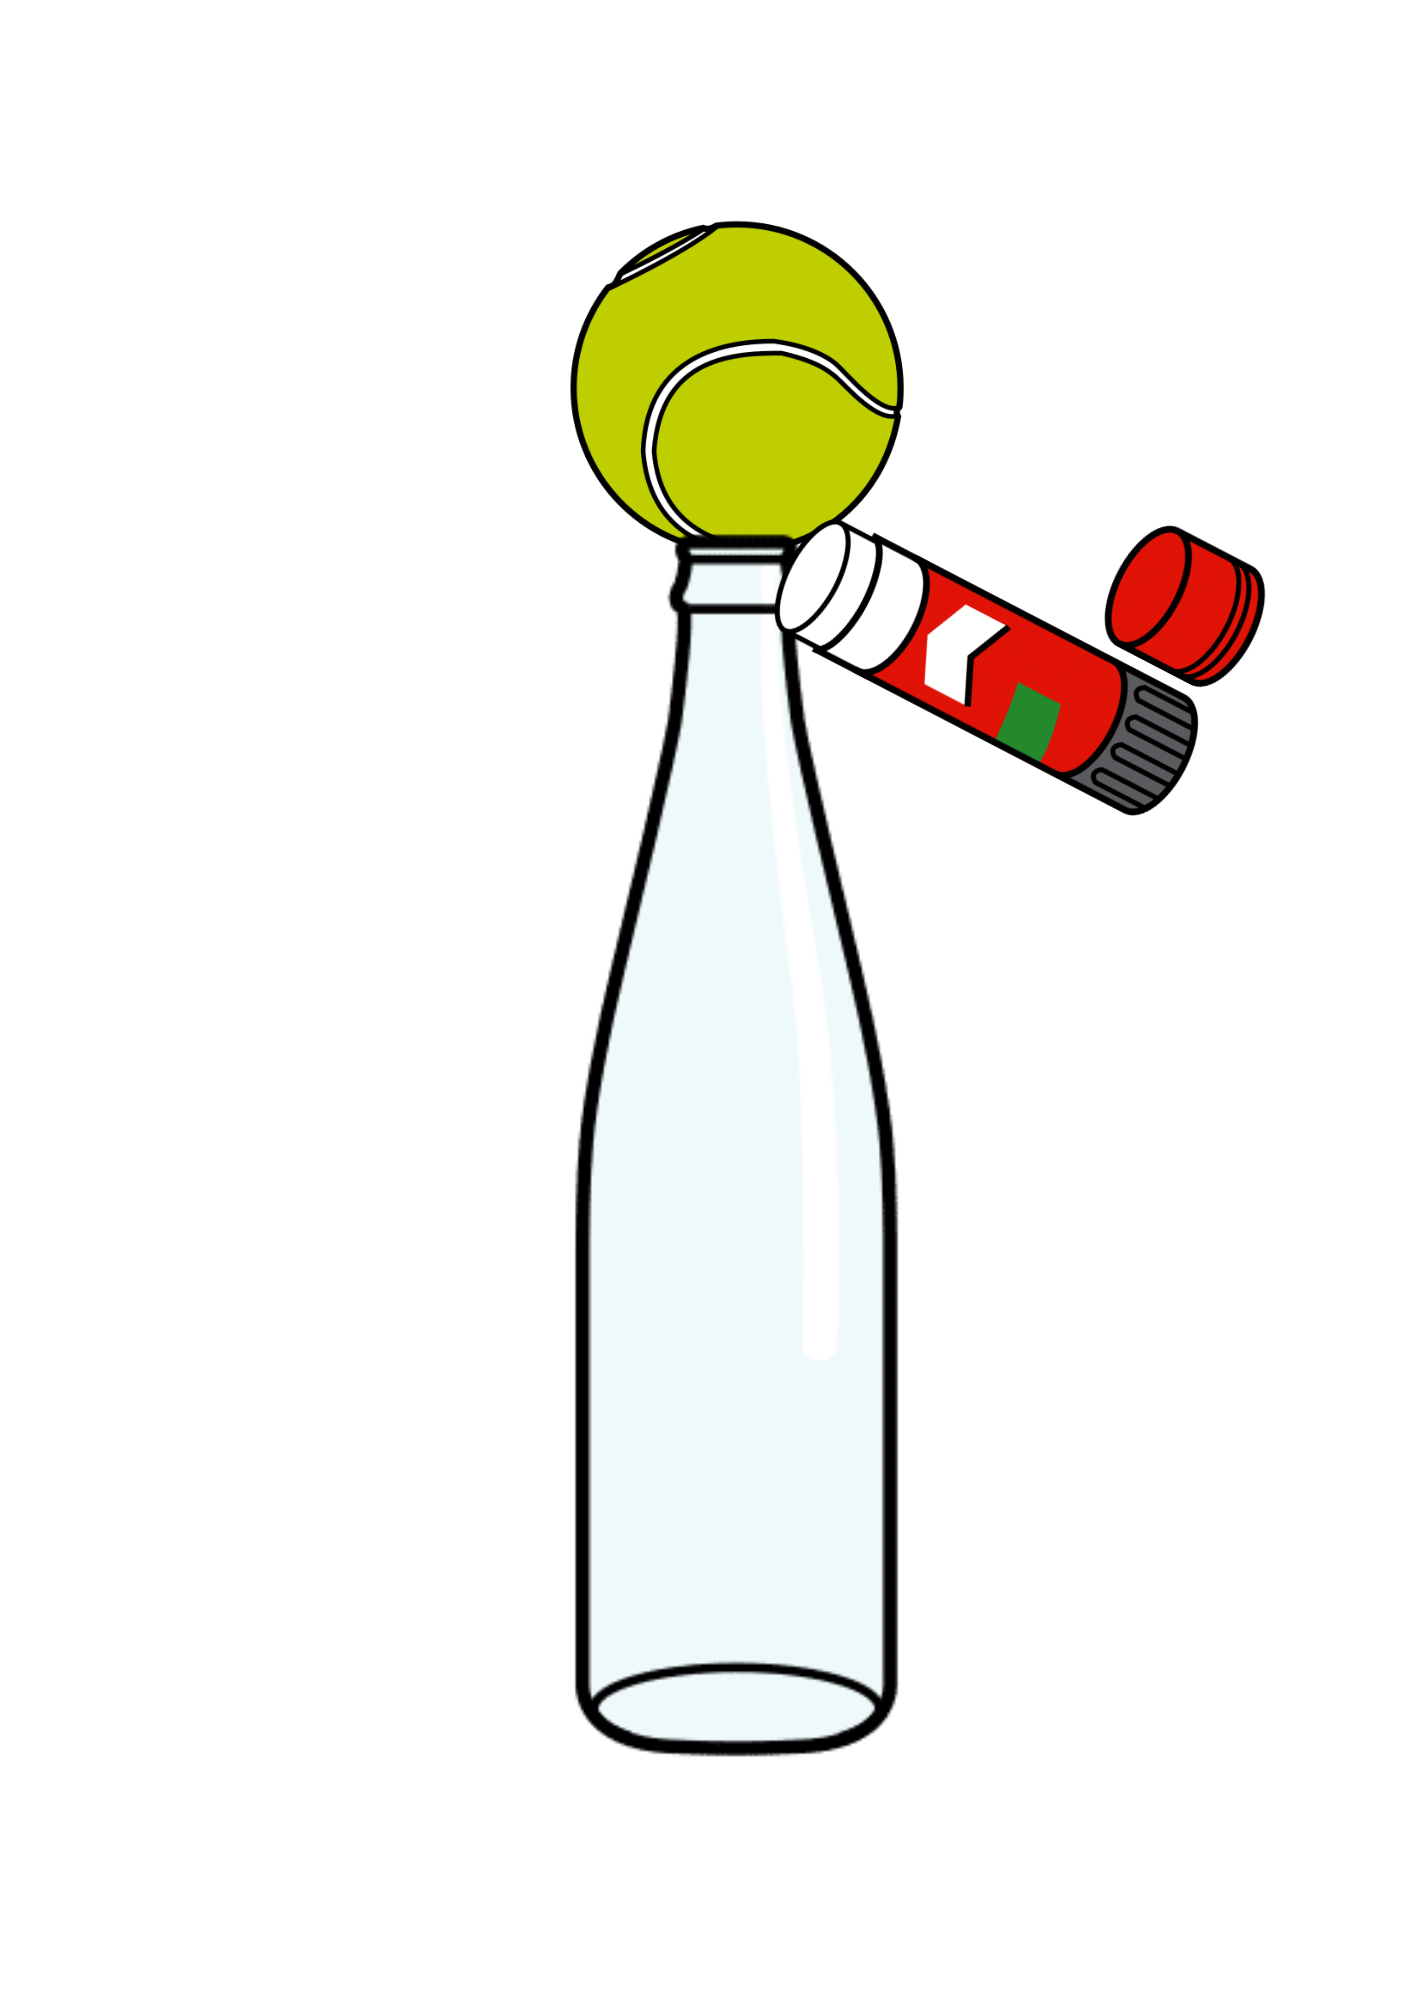 La imagen muestra una botella con una pelota de tenis unida a la boca de la botella y una barra de pegamento uniéndolas